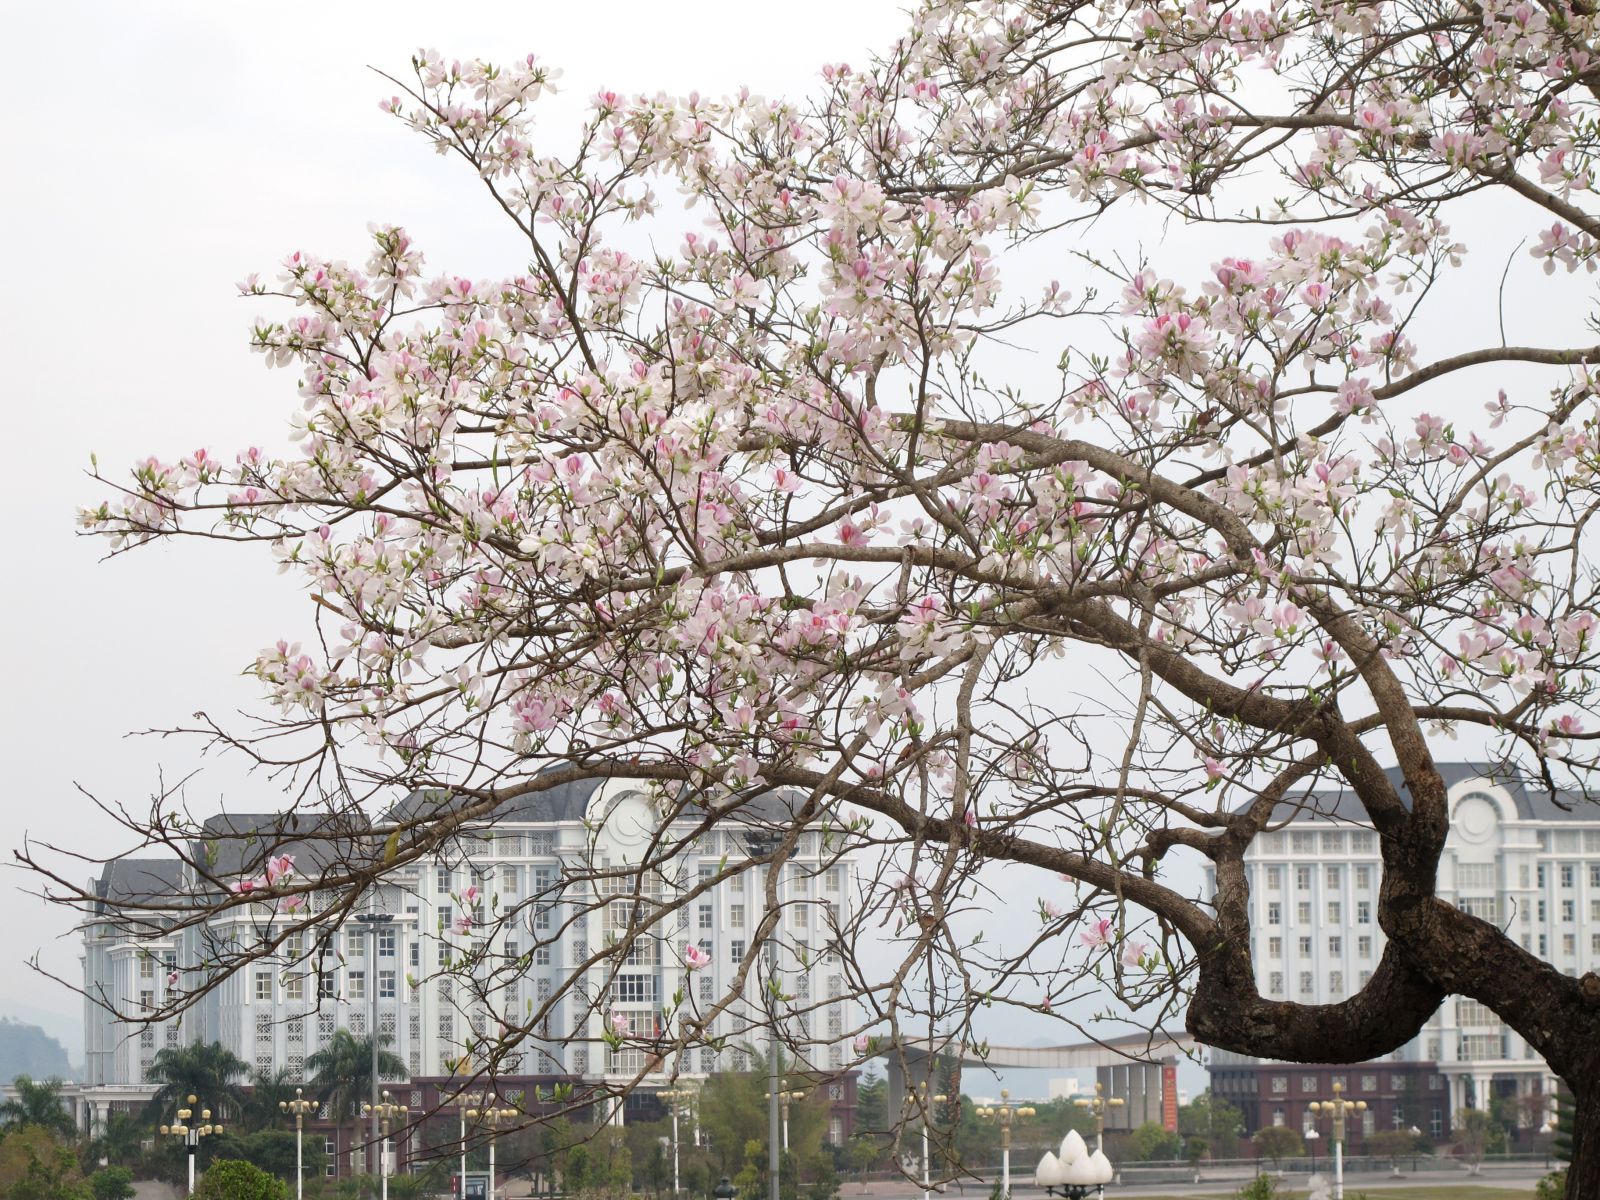 Hoa ban khoe sắc thắm giữa lòng thành phố, trước Khu Trung tâm hành chính - Chính trị tỉnh Lai Châu